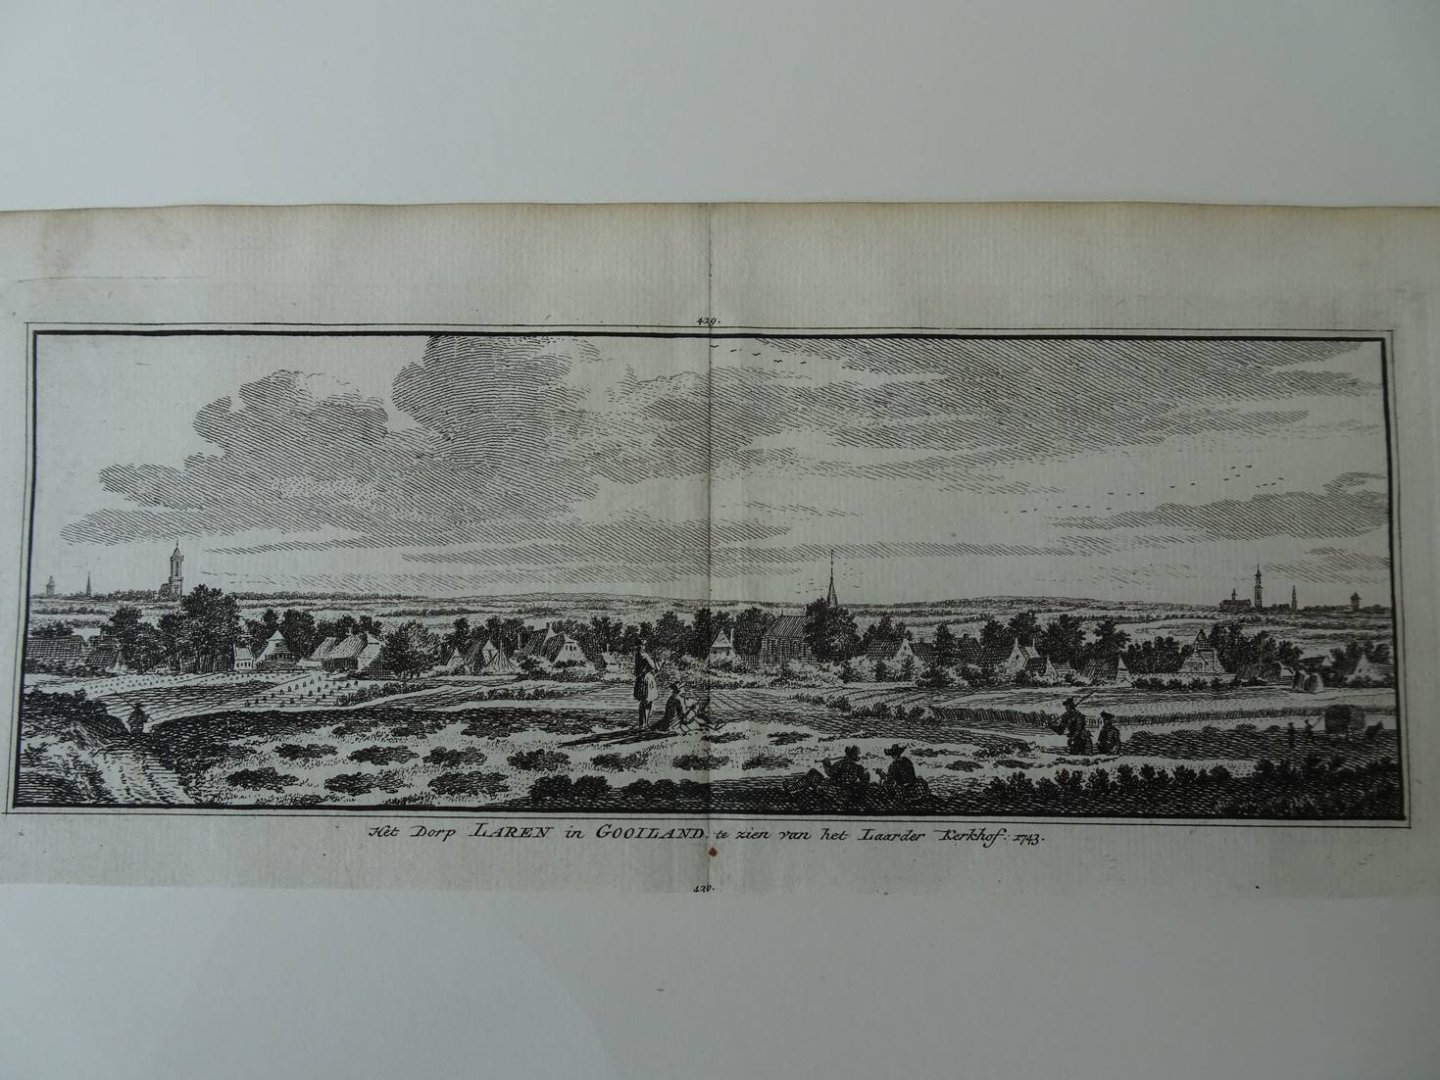 Laren. - Het Dorp Laren in Gooiland te zien van het Laarder Kerkhof, 1743.